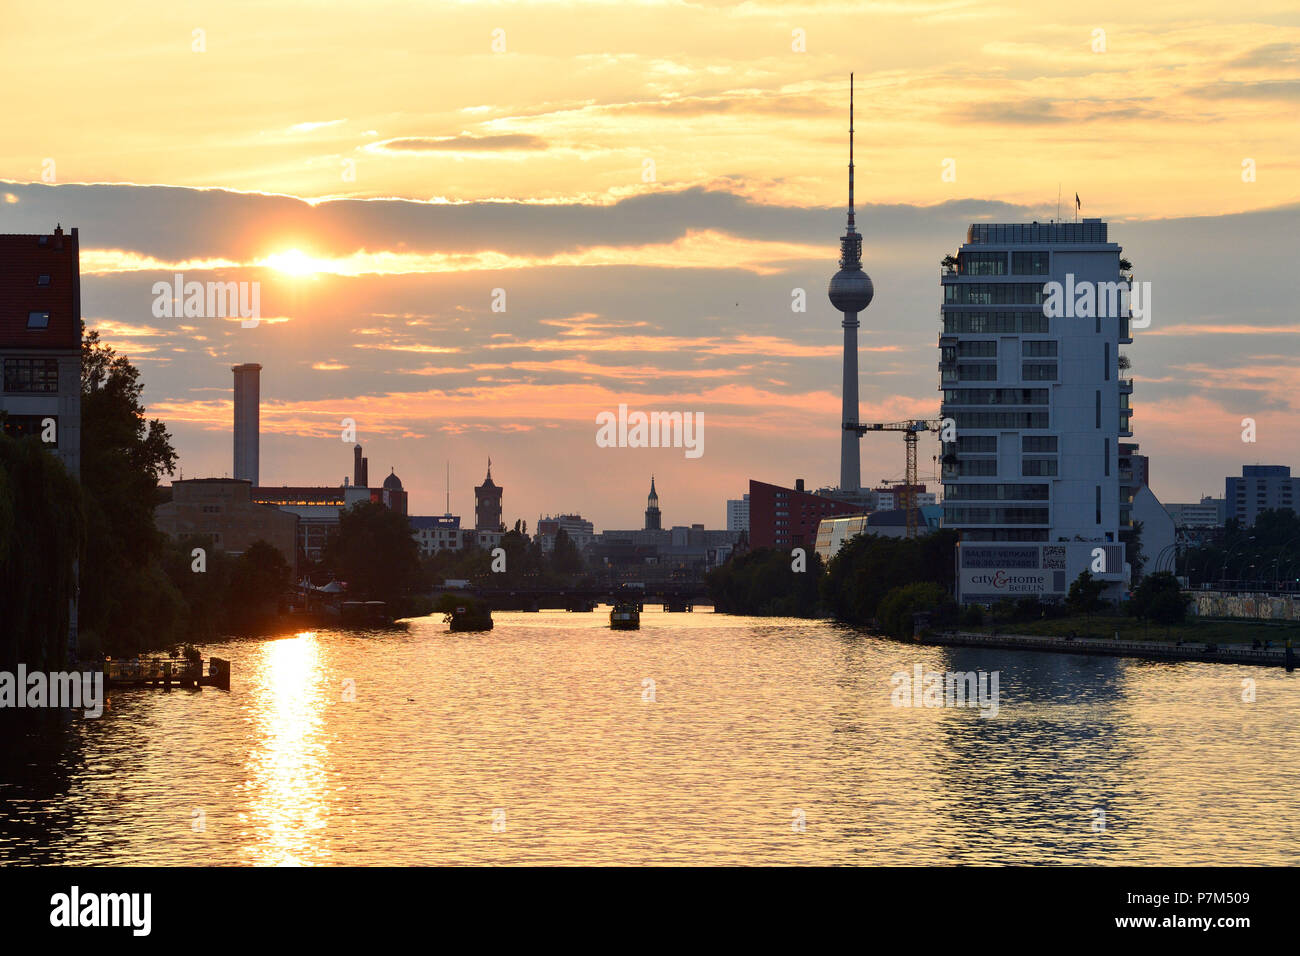 Alemania, Berlín, Friedrichshain-Kreuzberg, orillas del río Spree, la Torre de TV de Berlín en el fondo Foto de stock